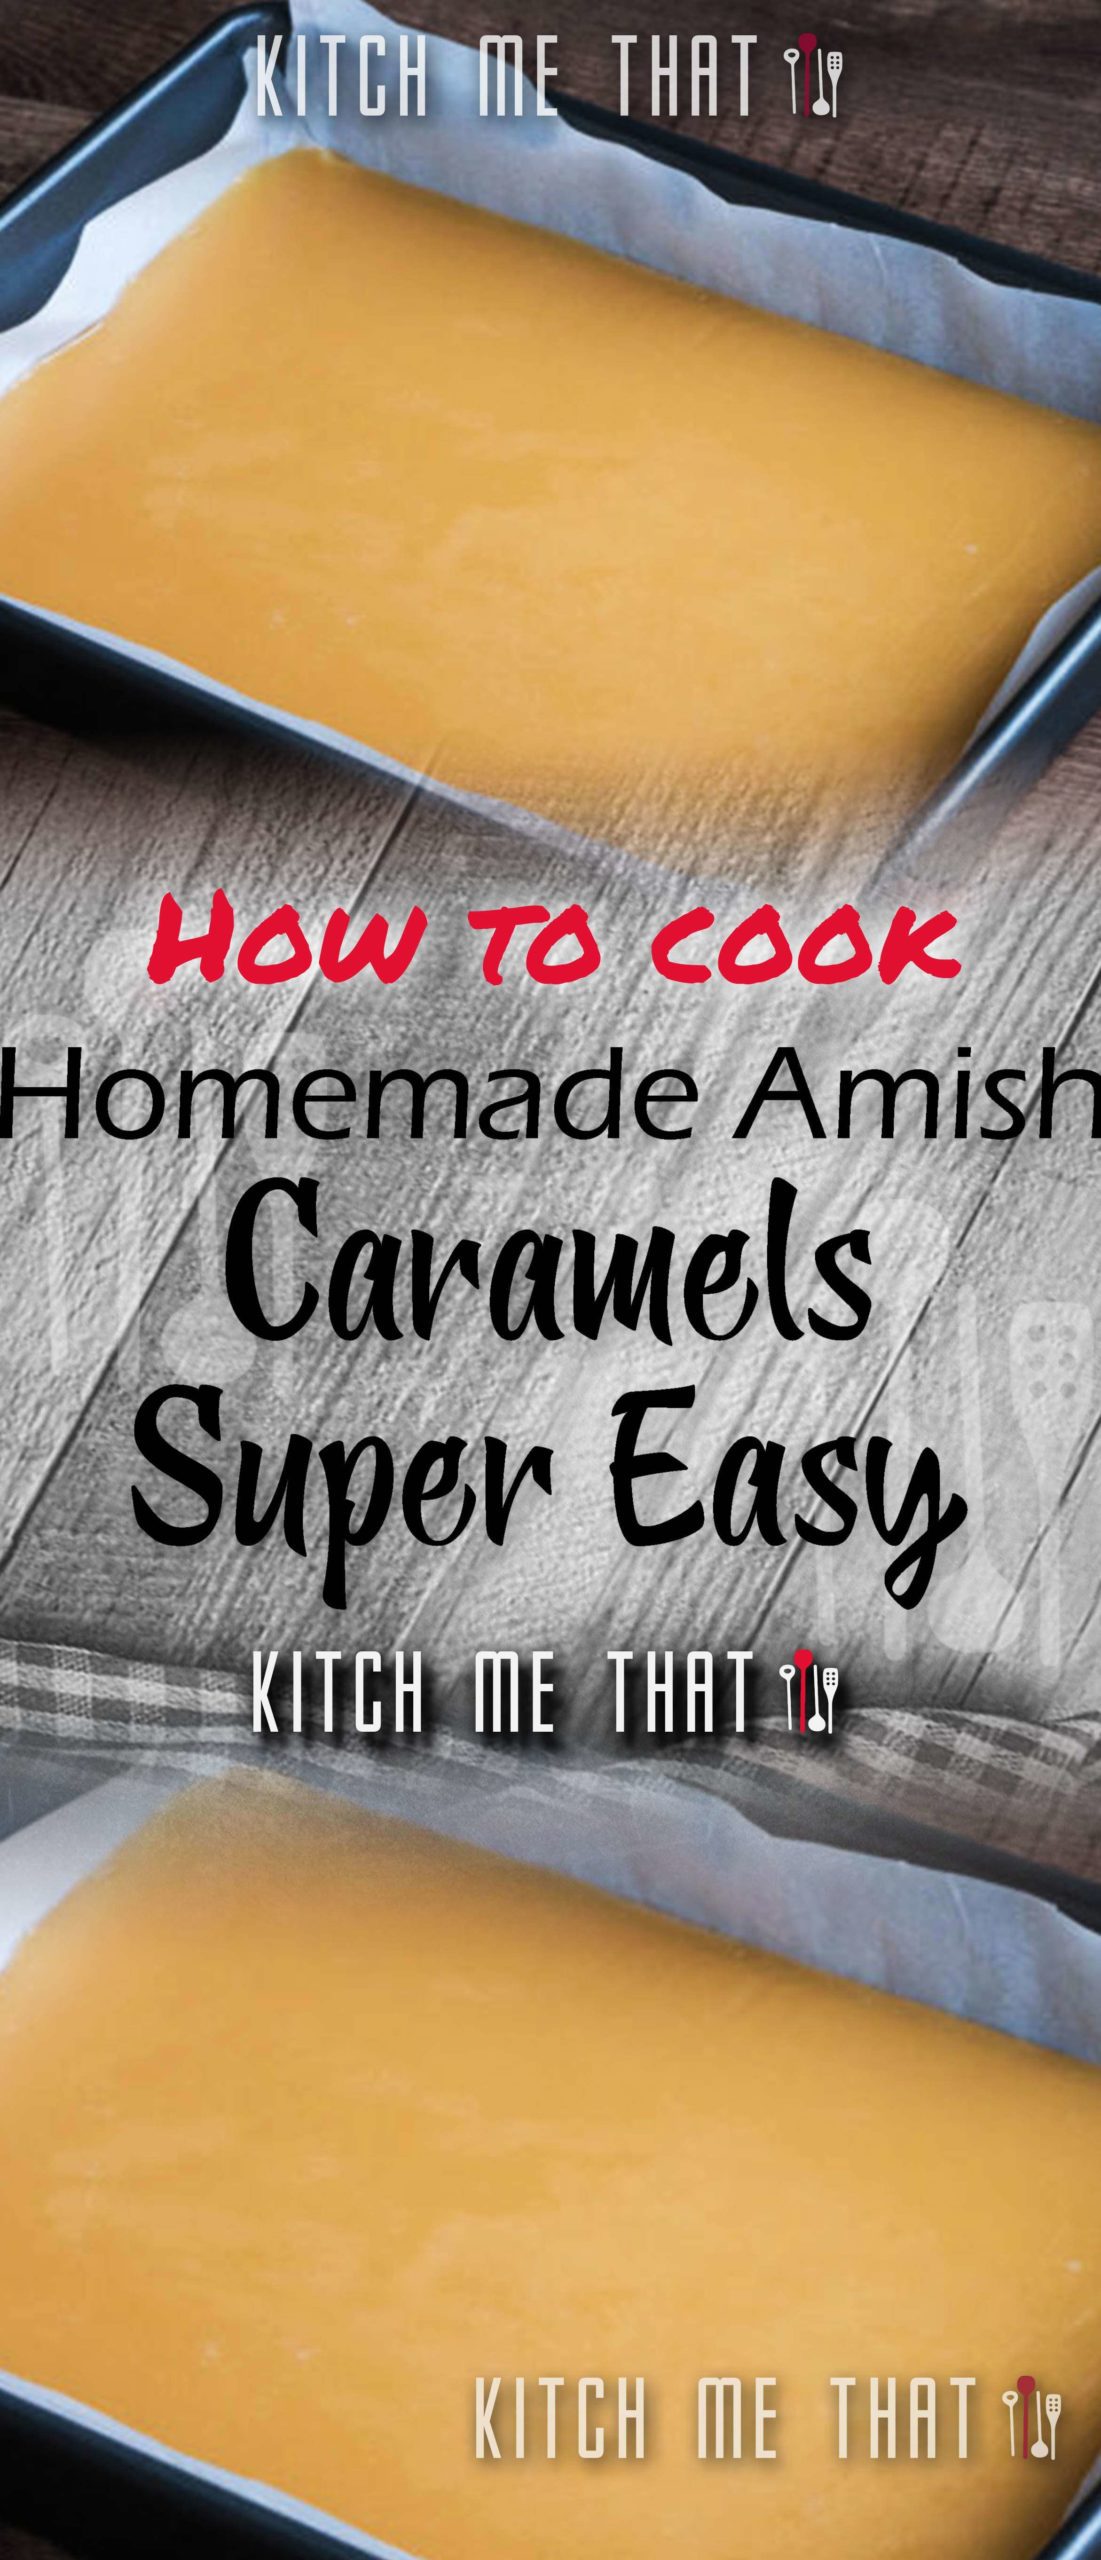 Homemade Amish Caramels